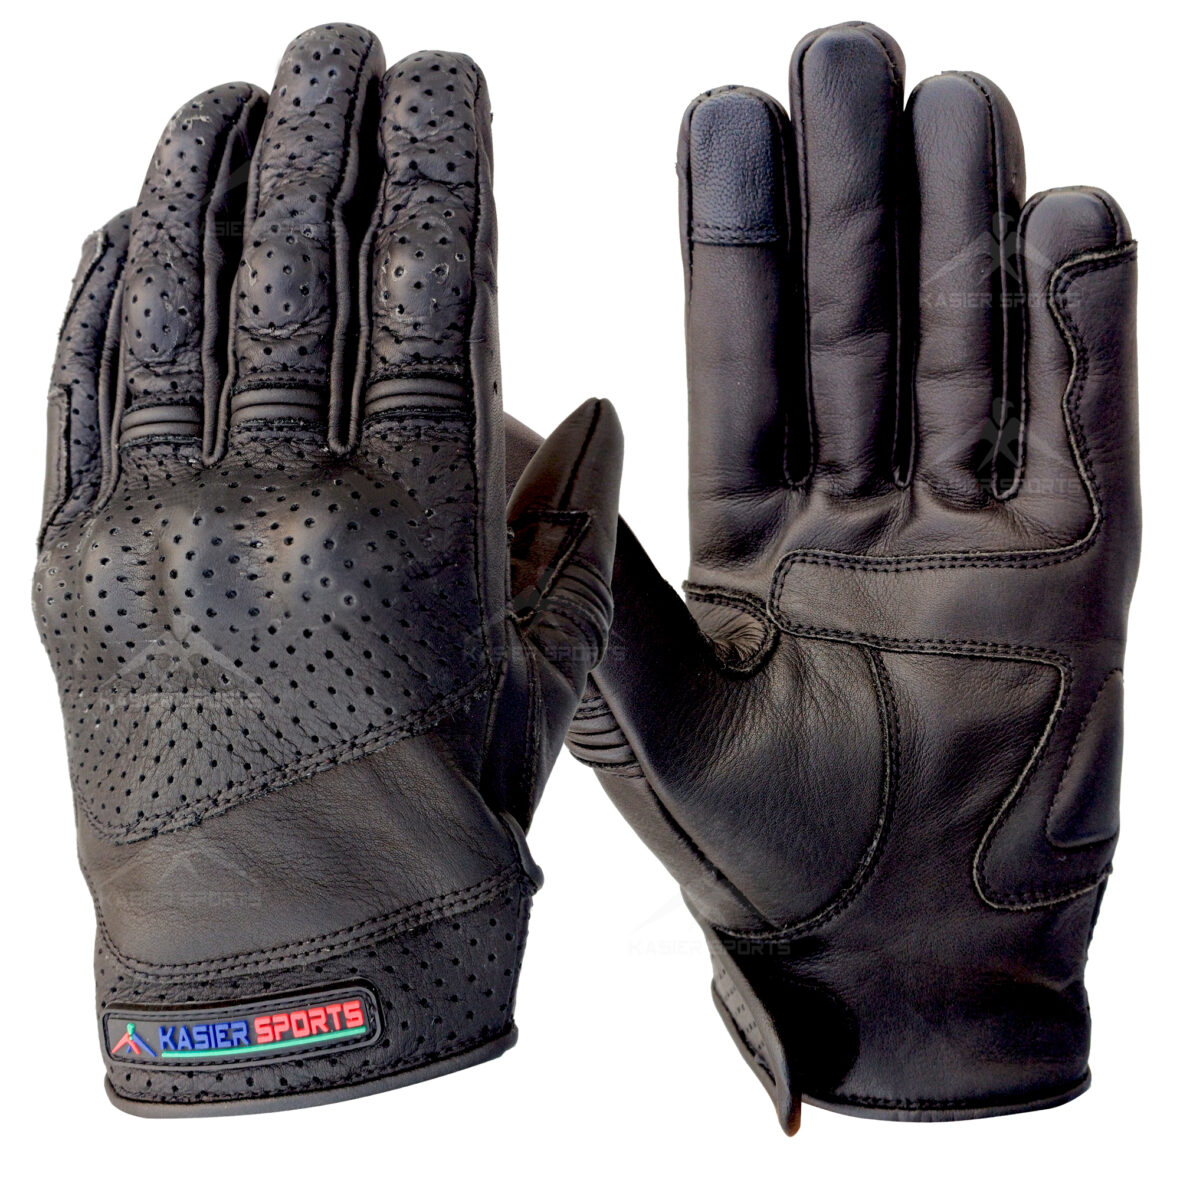 Gloves Manufacturer